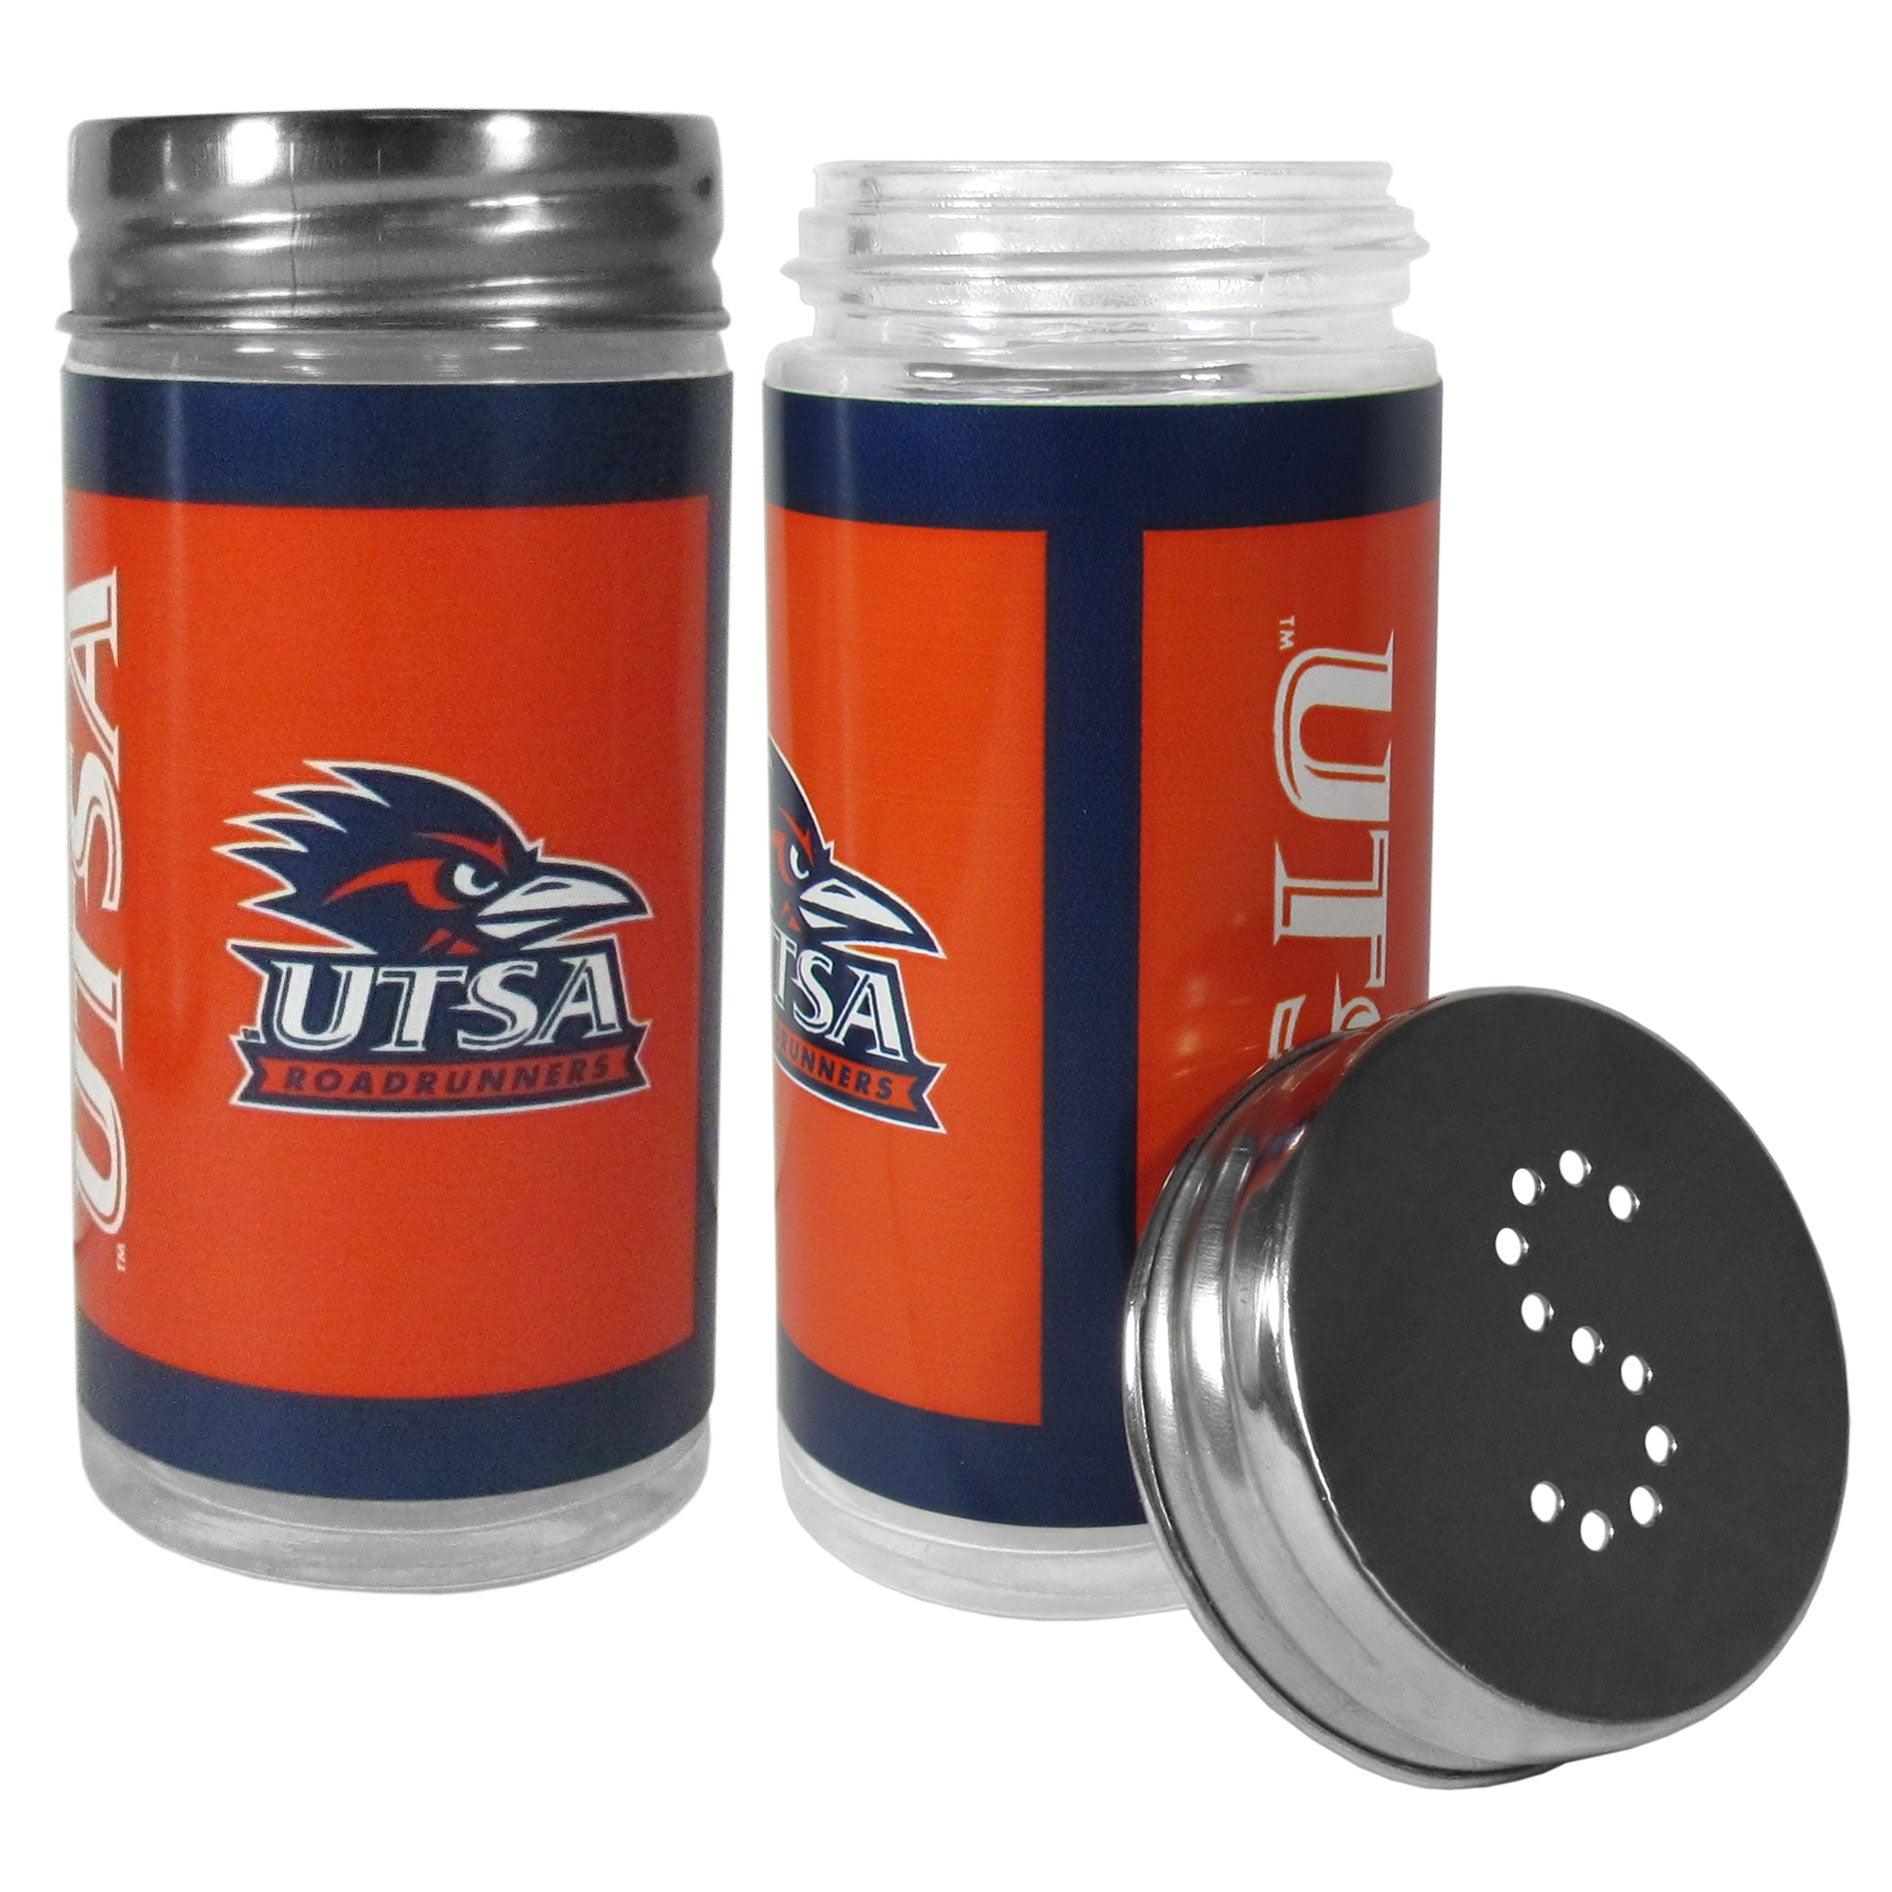 UTSA Tailgater Salt & Pepper Shakers - Flyclothing LLC